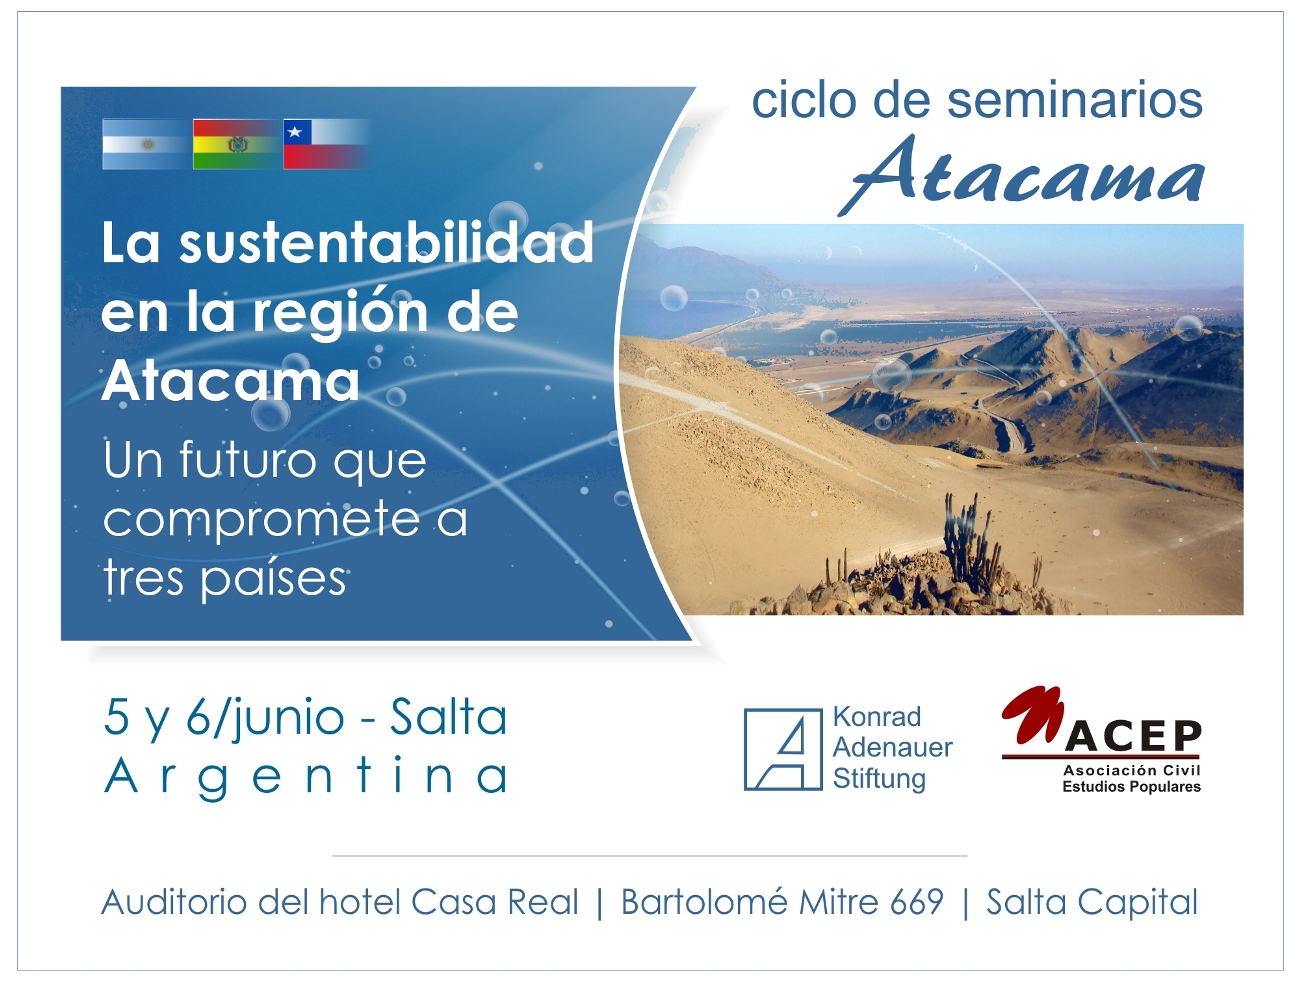 Ciclo de seminarios - Atacama